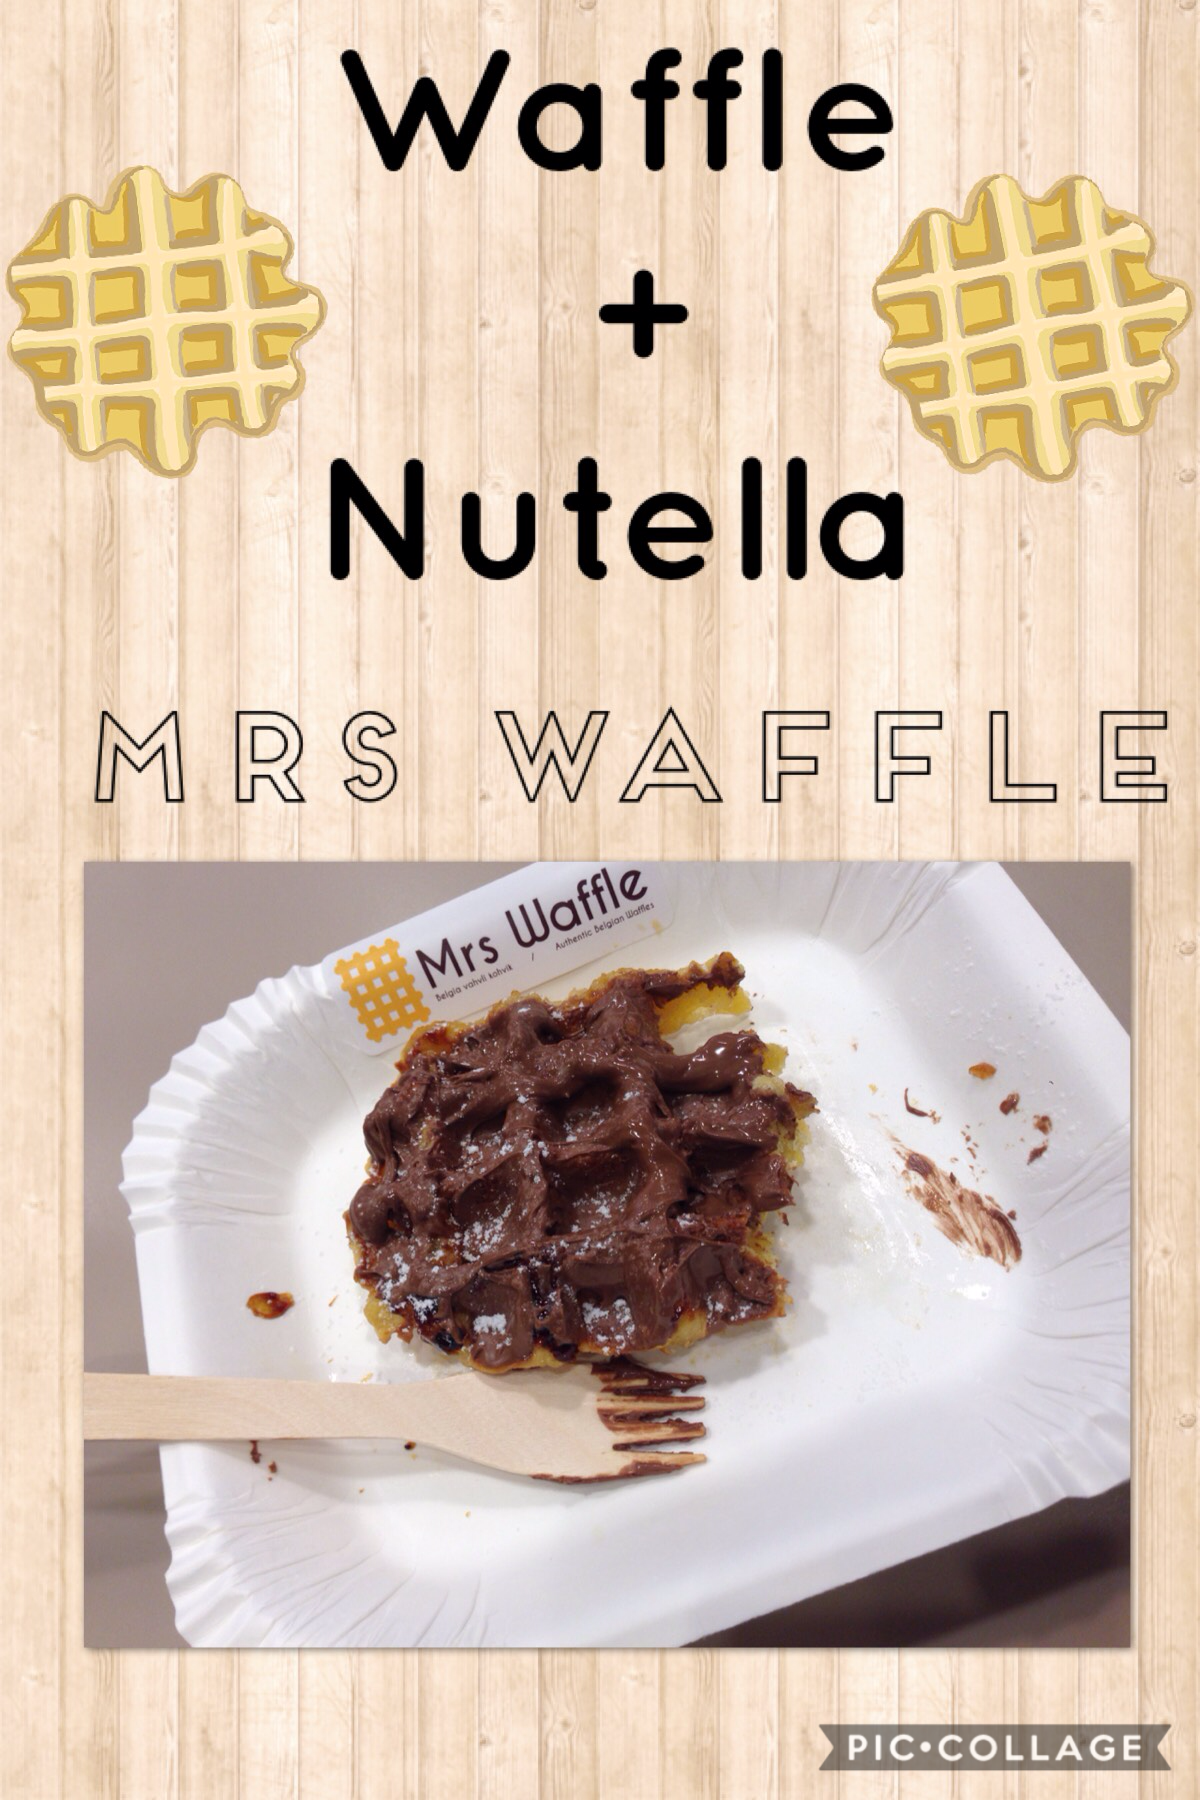 Num num
Mrs Waffle
Waffle + Nutella